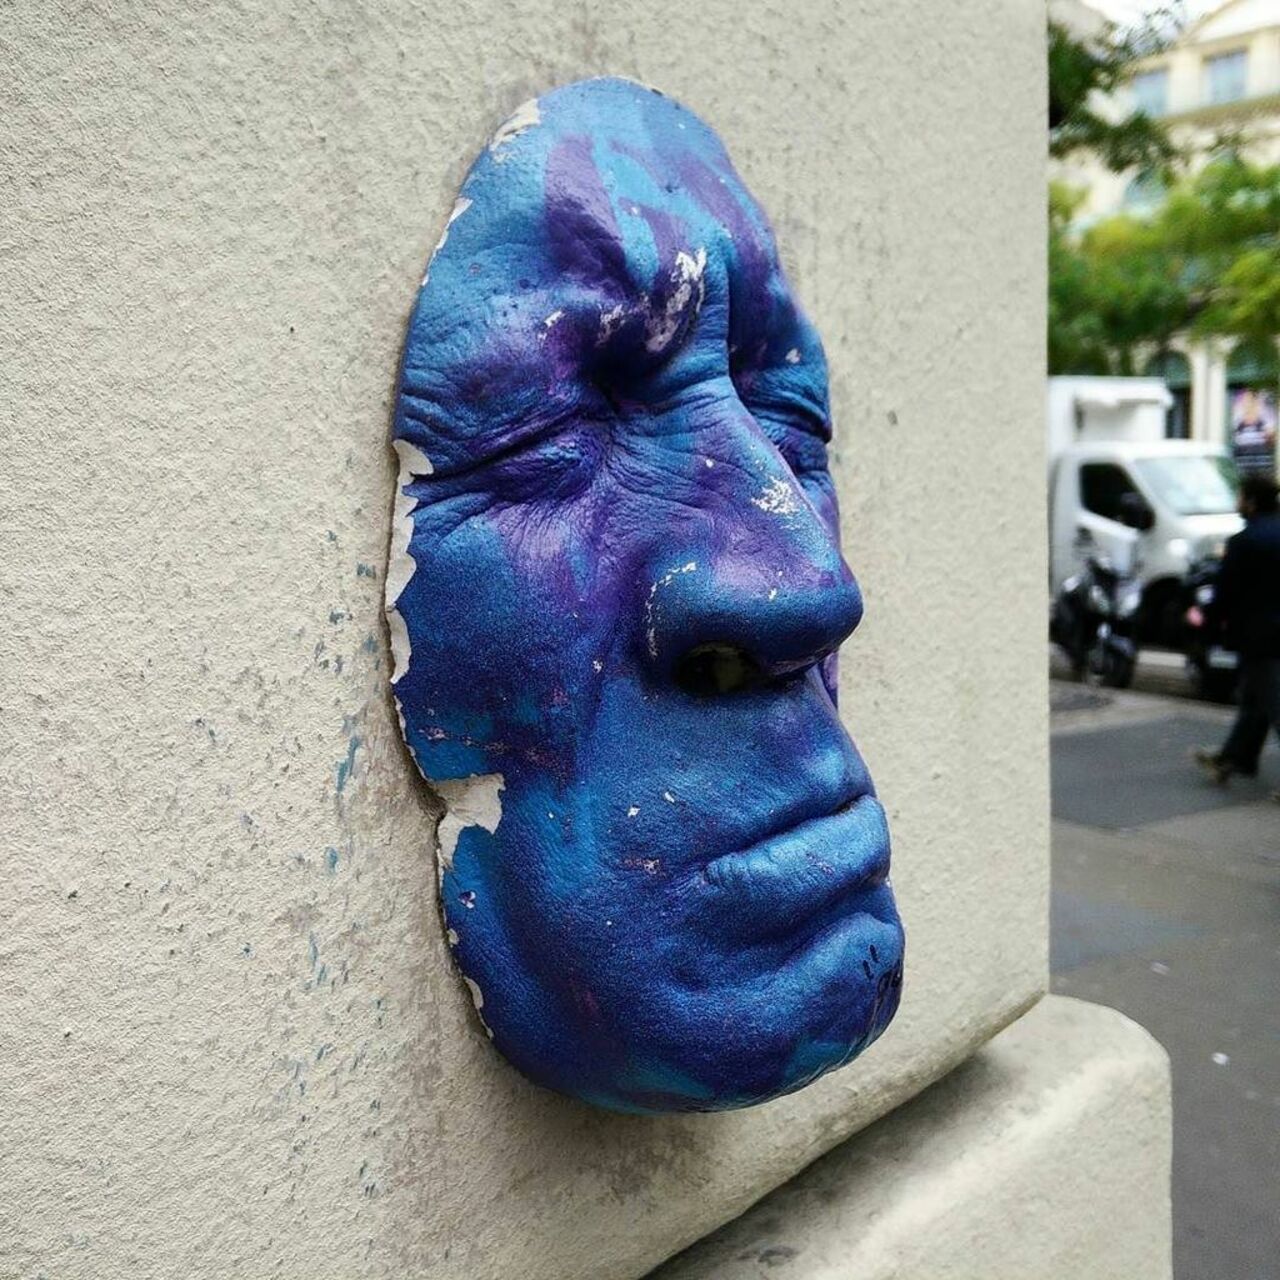 Blue face by @gregosart #gregos

#streetart #streetartparis #parisstreetart #parisgraffiti #graffiti #graffitiart #… https://t.co/A9g9wBo3sT